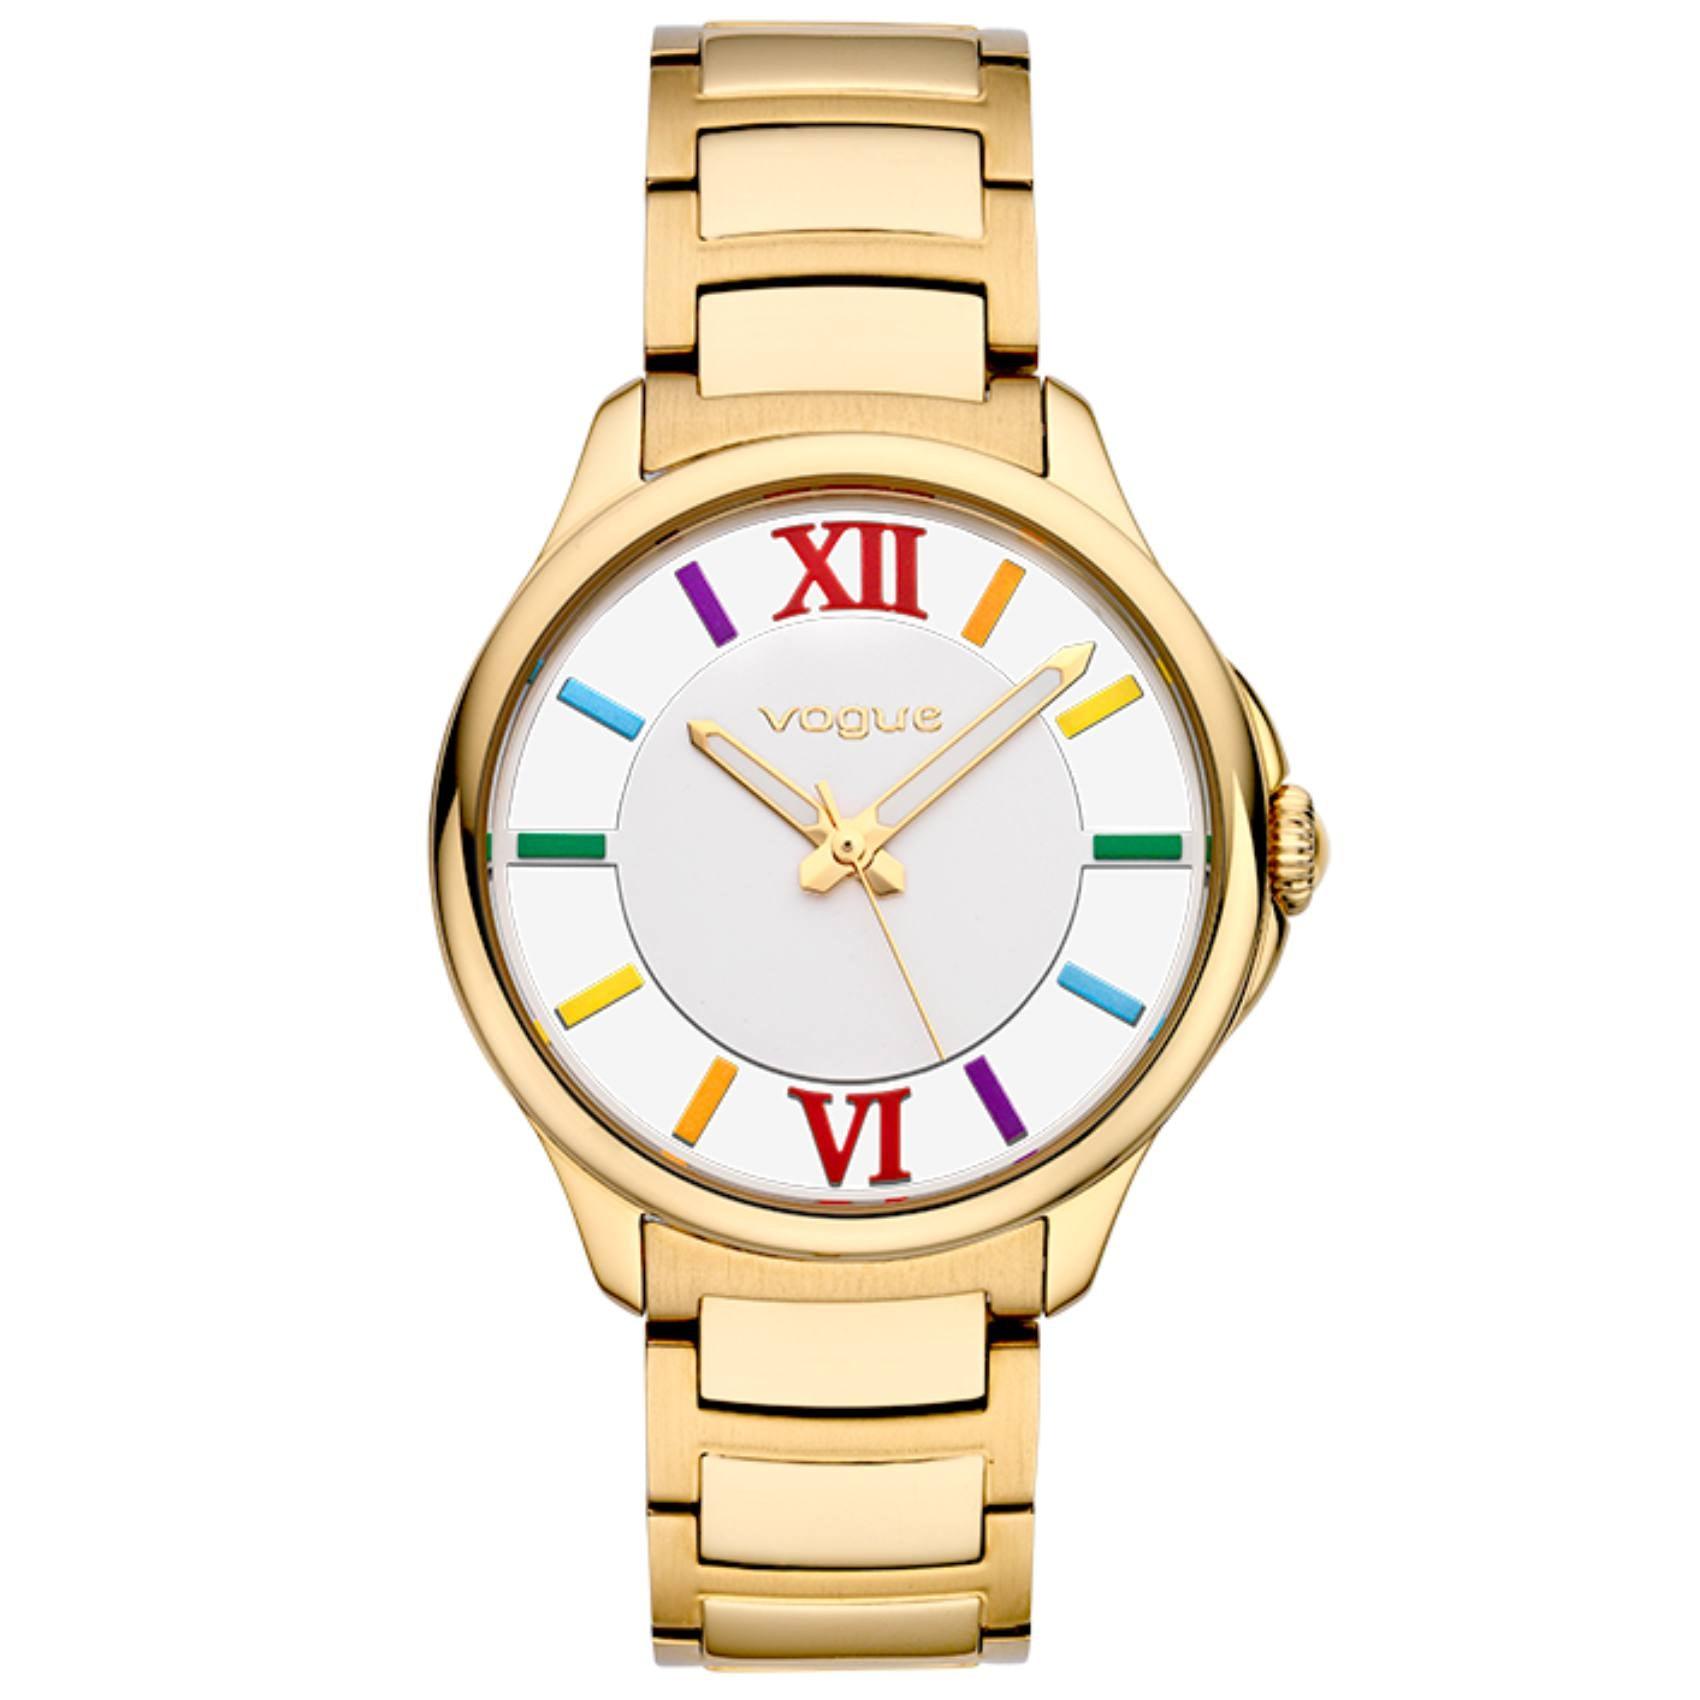 Γυναικείο ρολόι Vogue Marilyn 2020613042 με χρυσό ατσάλινο μπρασελέ και άσπρο καντράν διαμέτρου 37,5mm με πολύχρωμα νούμερα.